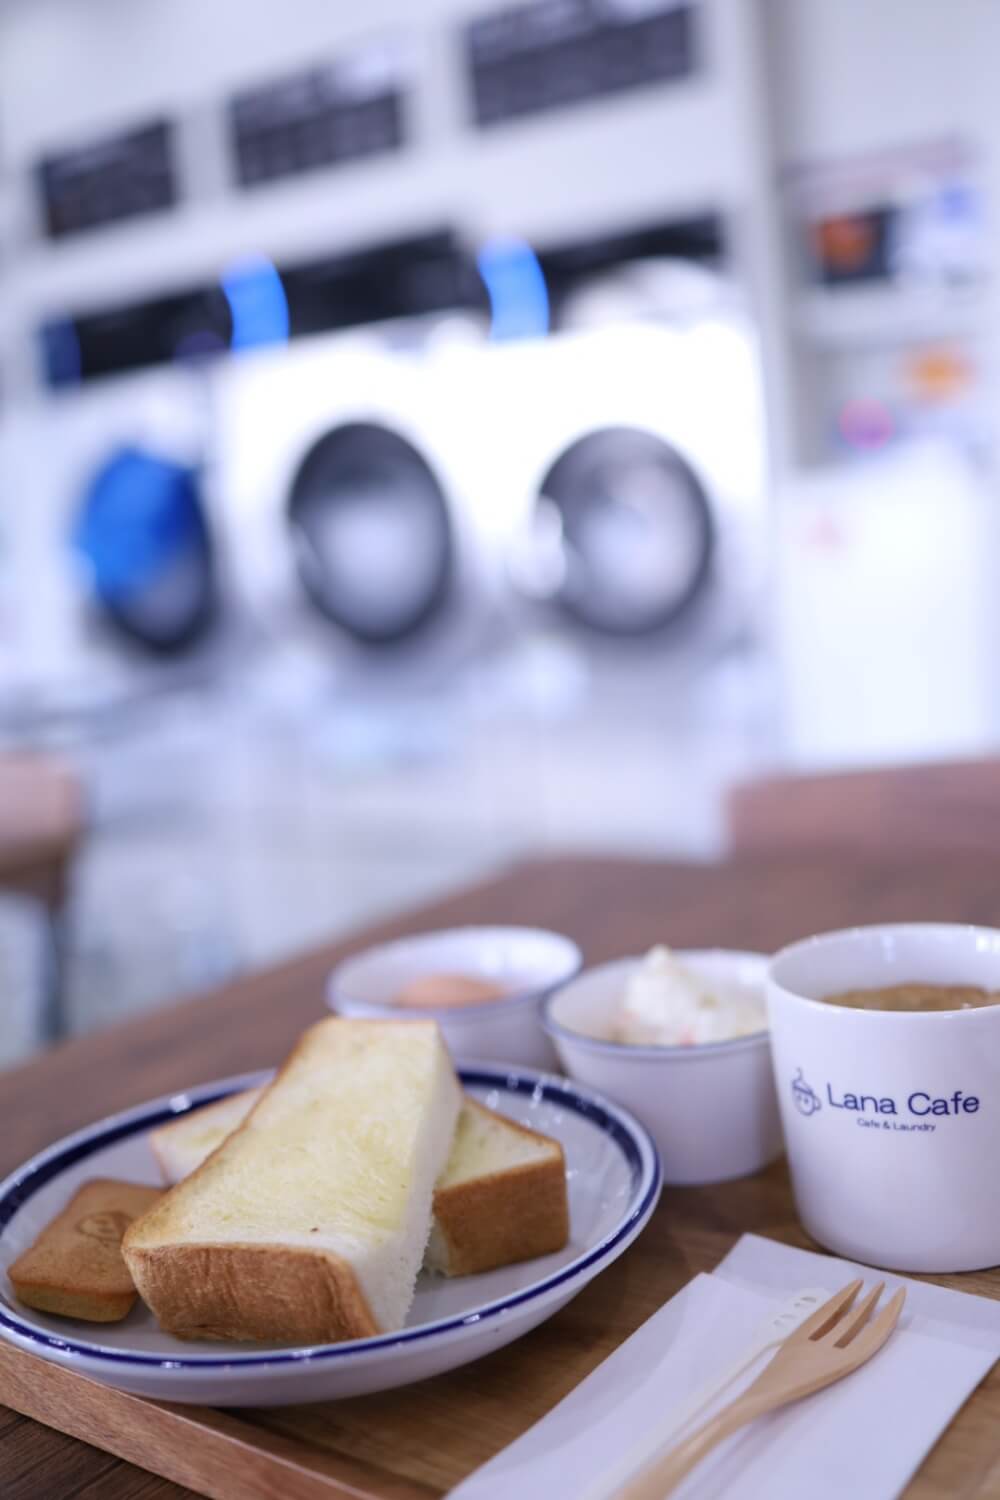 【モーニング・ランチも】コインランドリー併設型カフェ「Lana Cafe & Laundry（ラナカフェ & ランドリー）」に行ってきました1 (2)